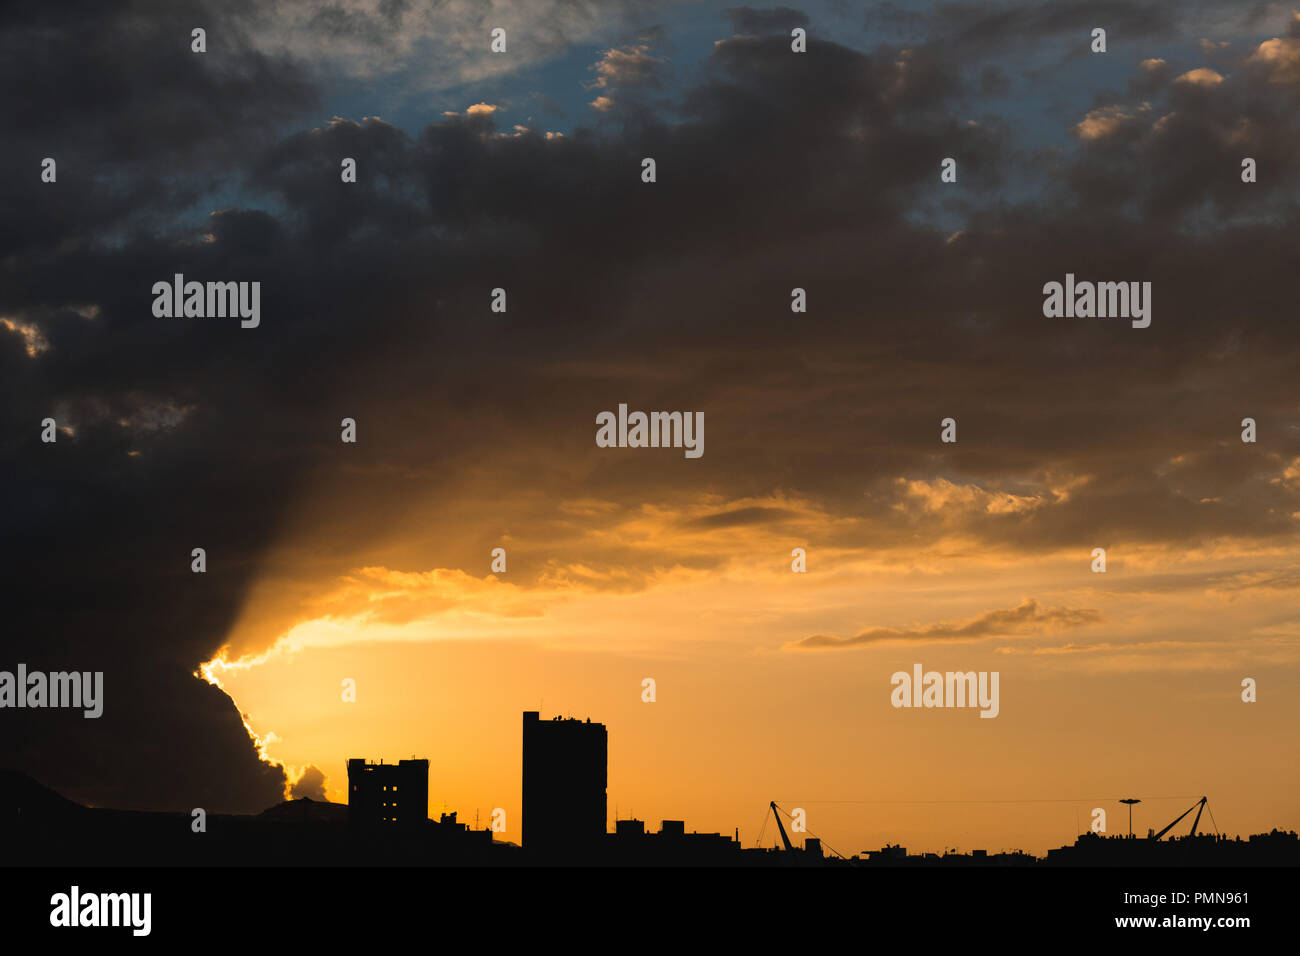 Espectacular puesta de sol sobre una ciudad moderna con rascacielos Torre bloques perfilados en el horizonte Foto de stock